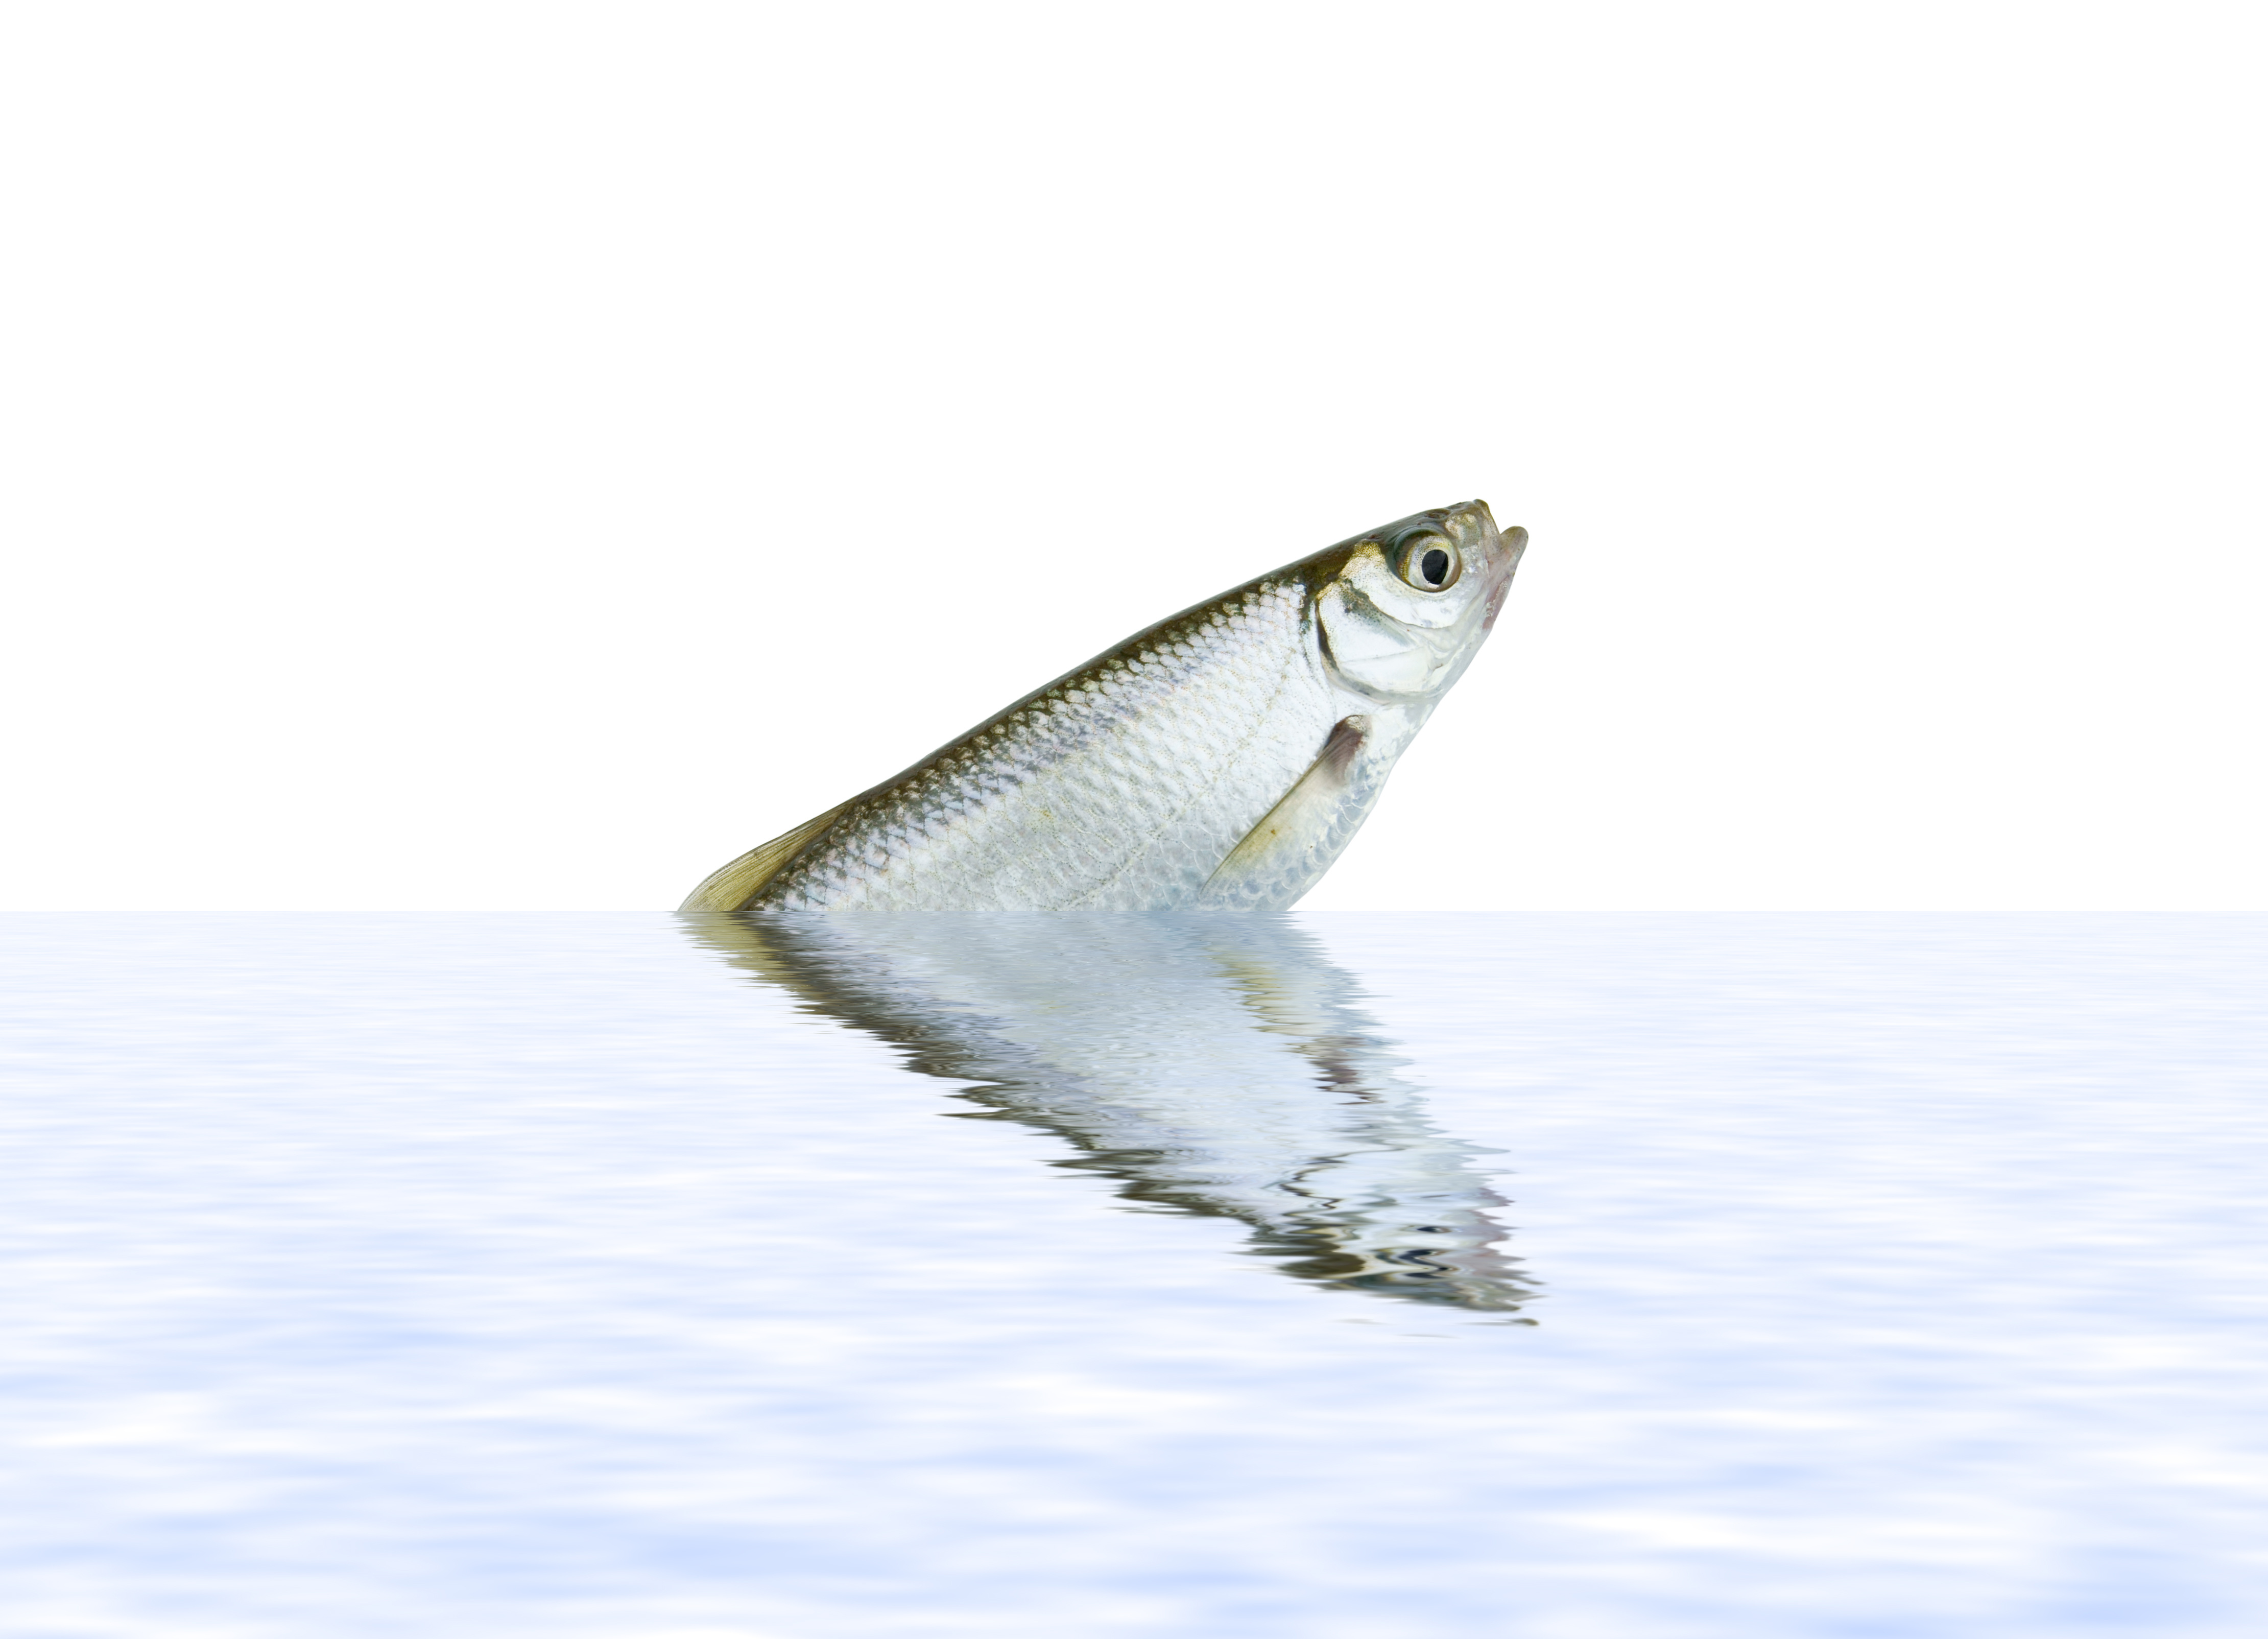 Le composé chimique identifié aux concentrations les plus élevées dans les poissons d'eau douce est le PFOS, il représente les ¾ des détections de PFAS (Visuel Adobe Stock 14746873)